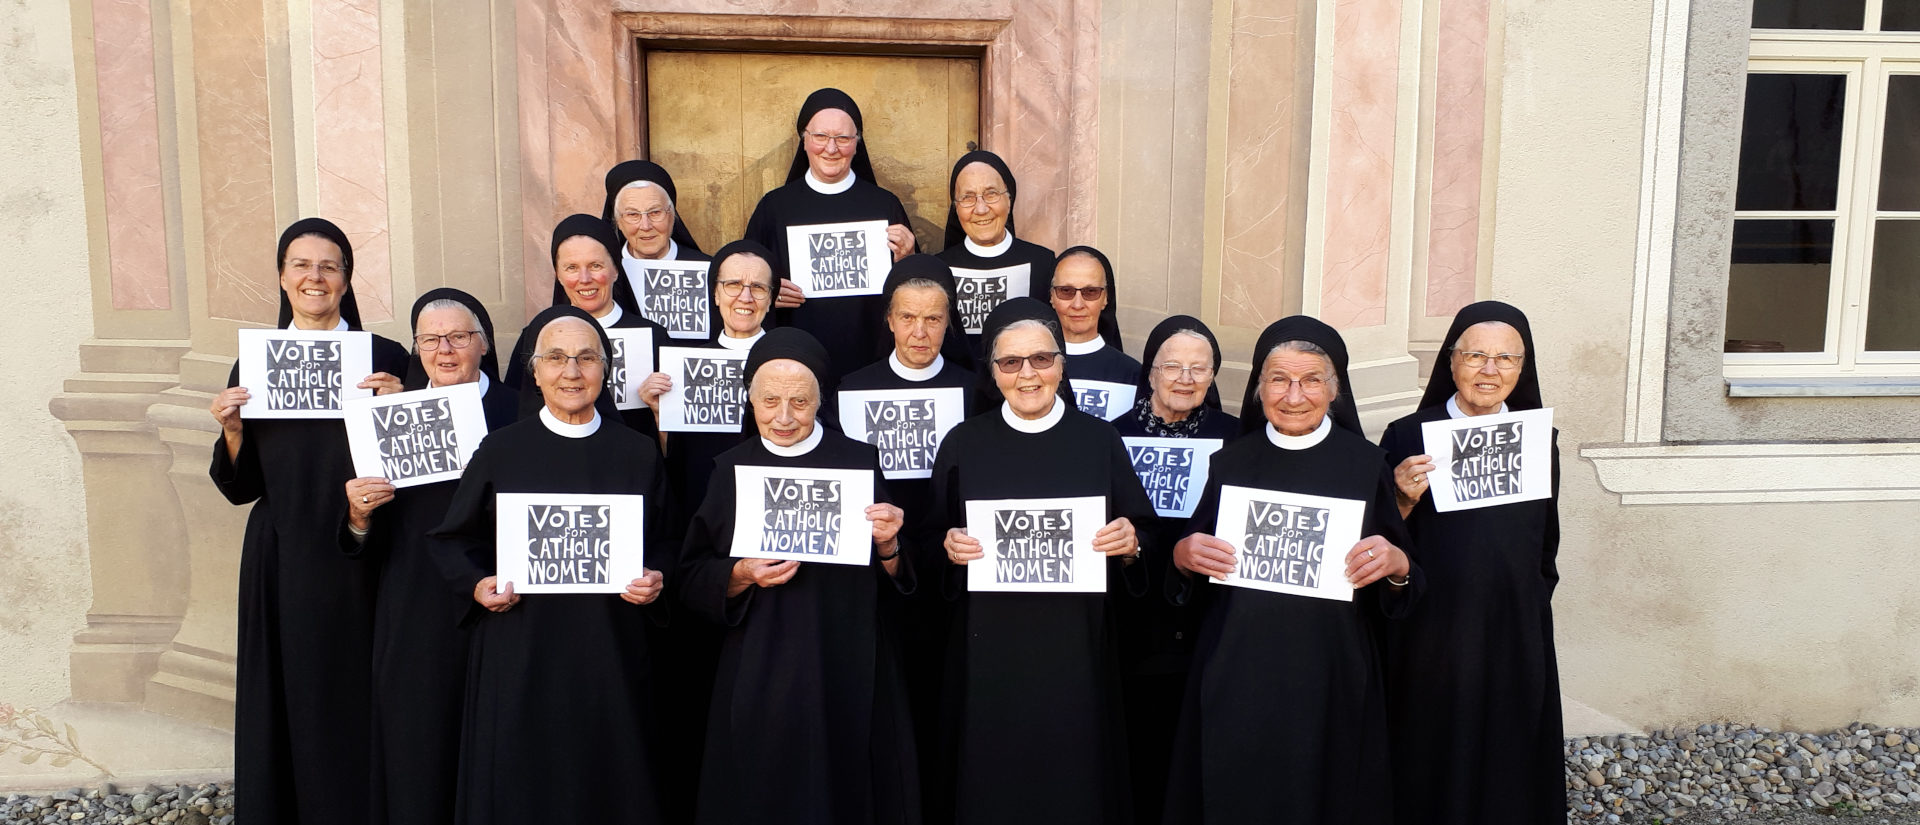 Die Benediktinerinnen des Klosters Fahr setzten sich schon 2018 für ein Frauenstimmrecht an Bischofs-Synoden ein.